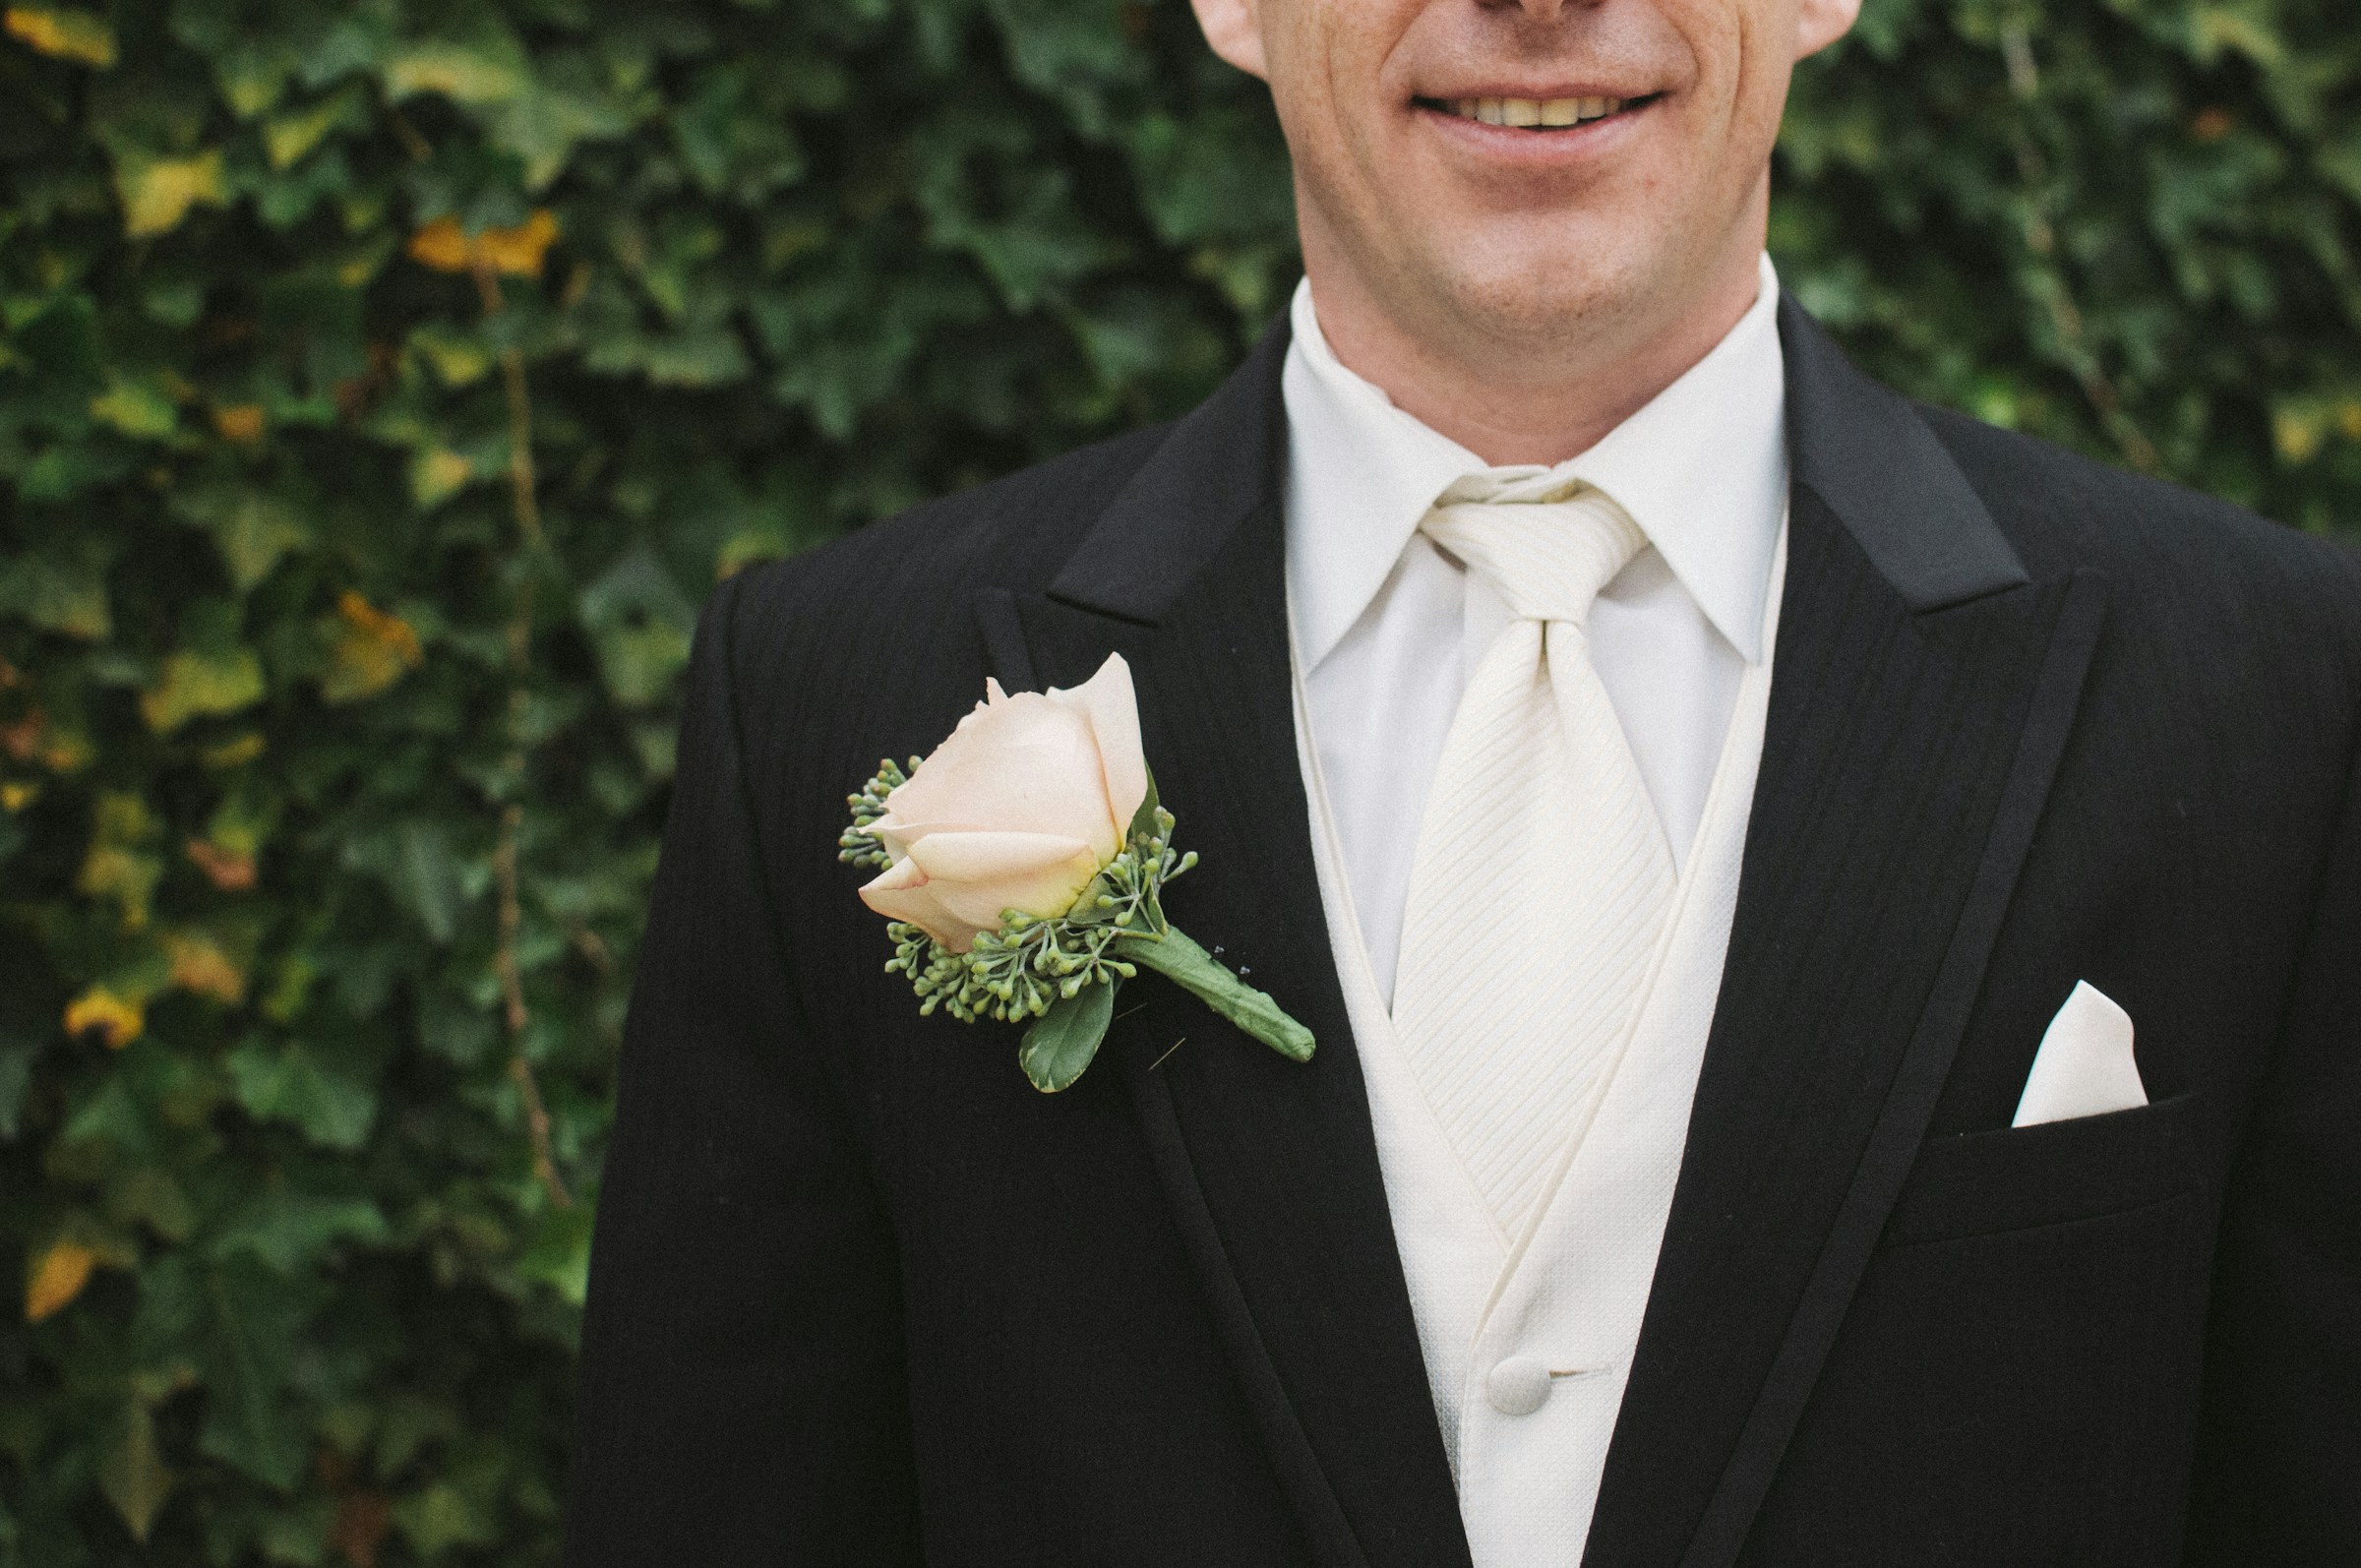 A smiling groom | Source: Unsplash